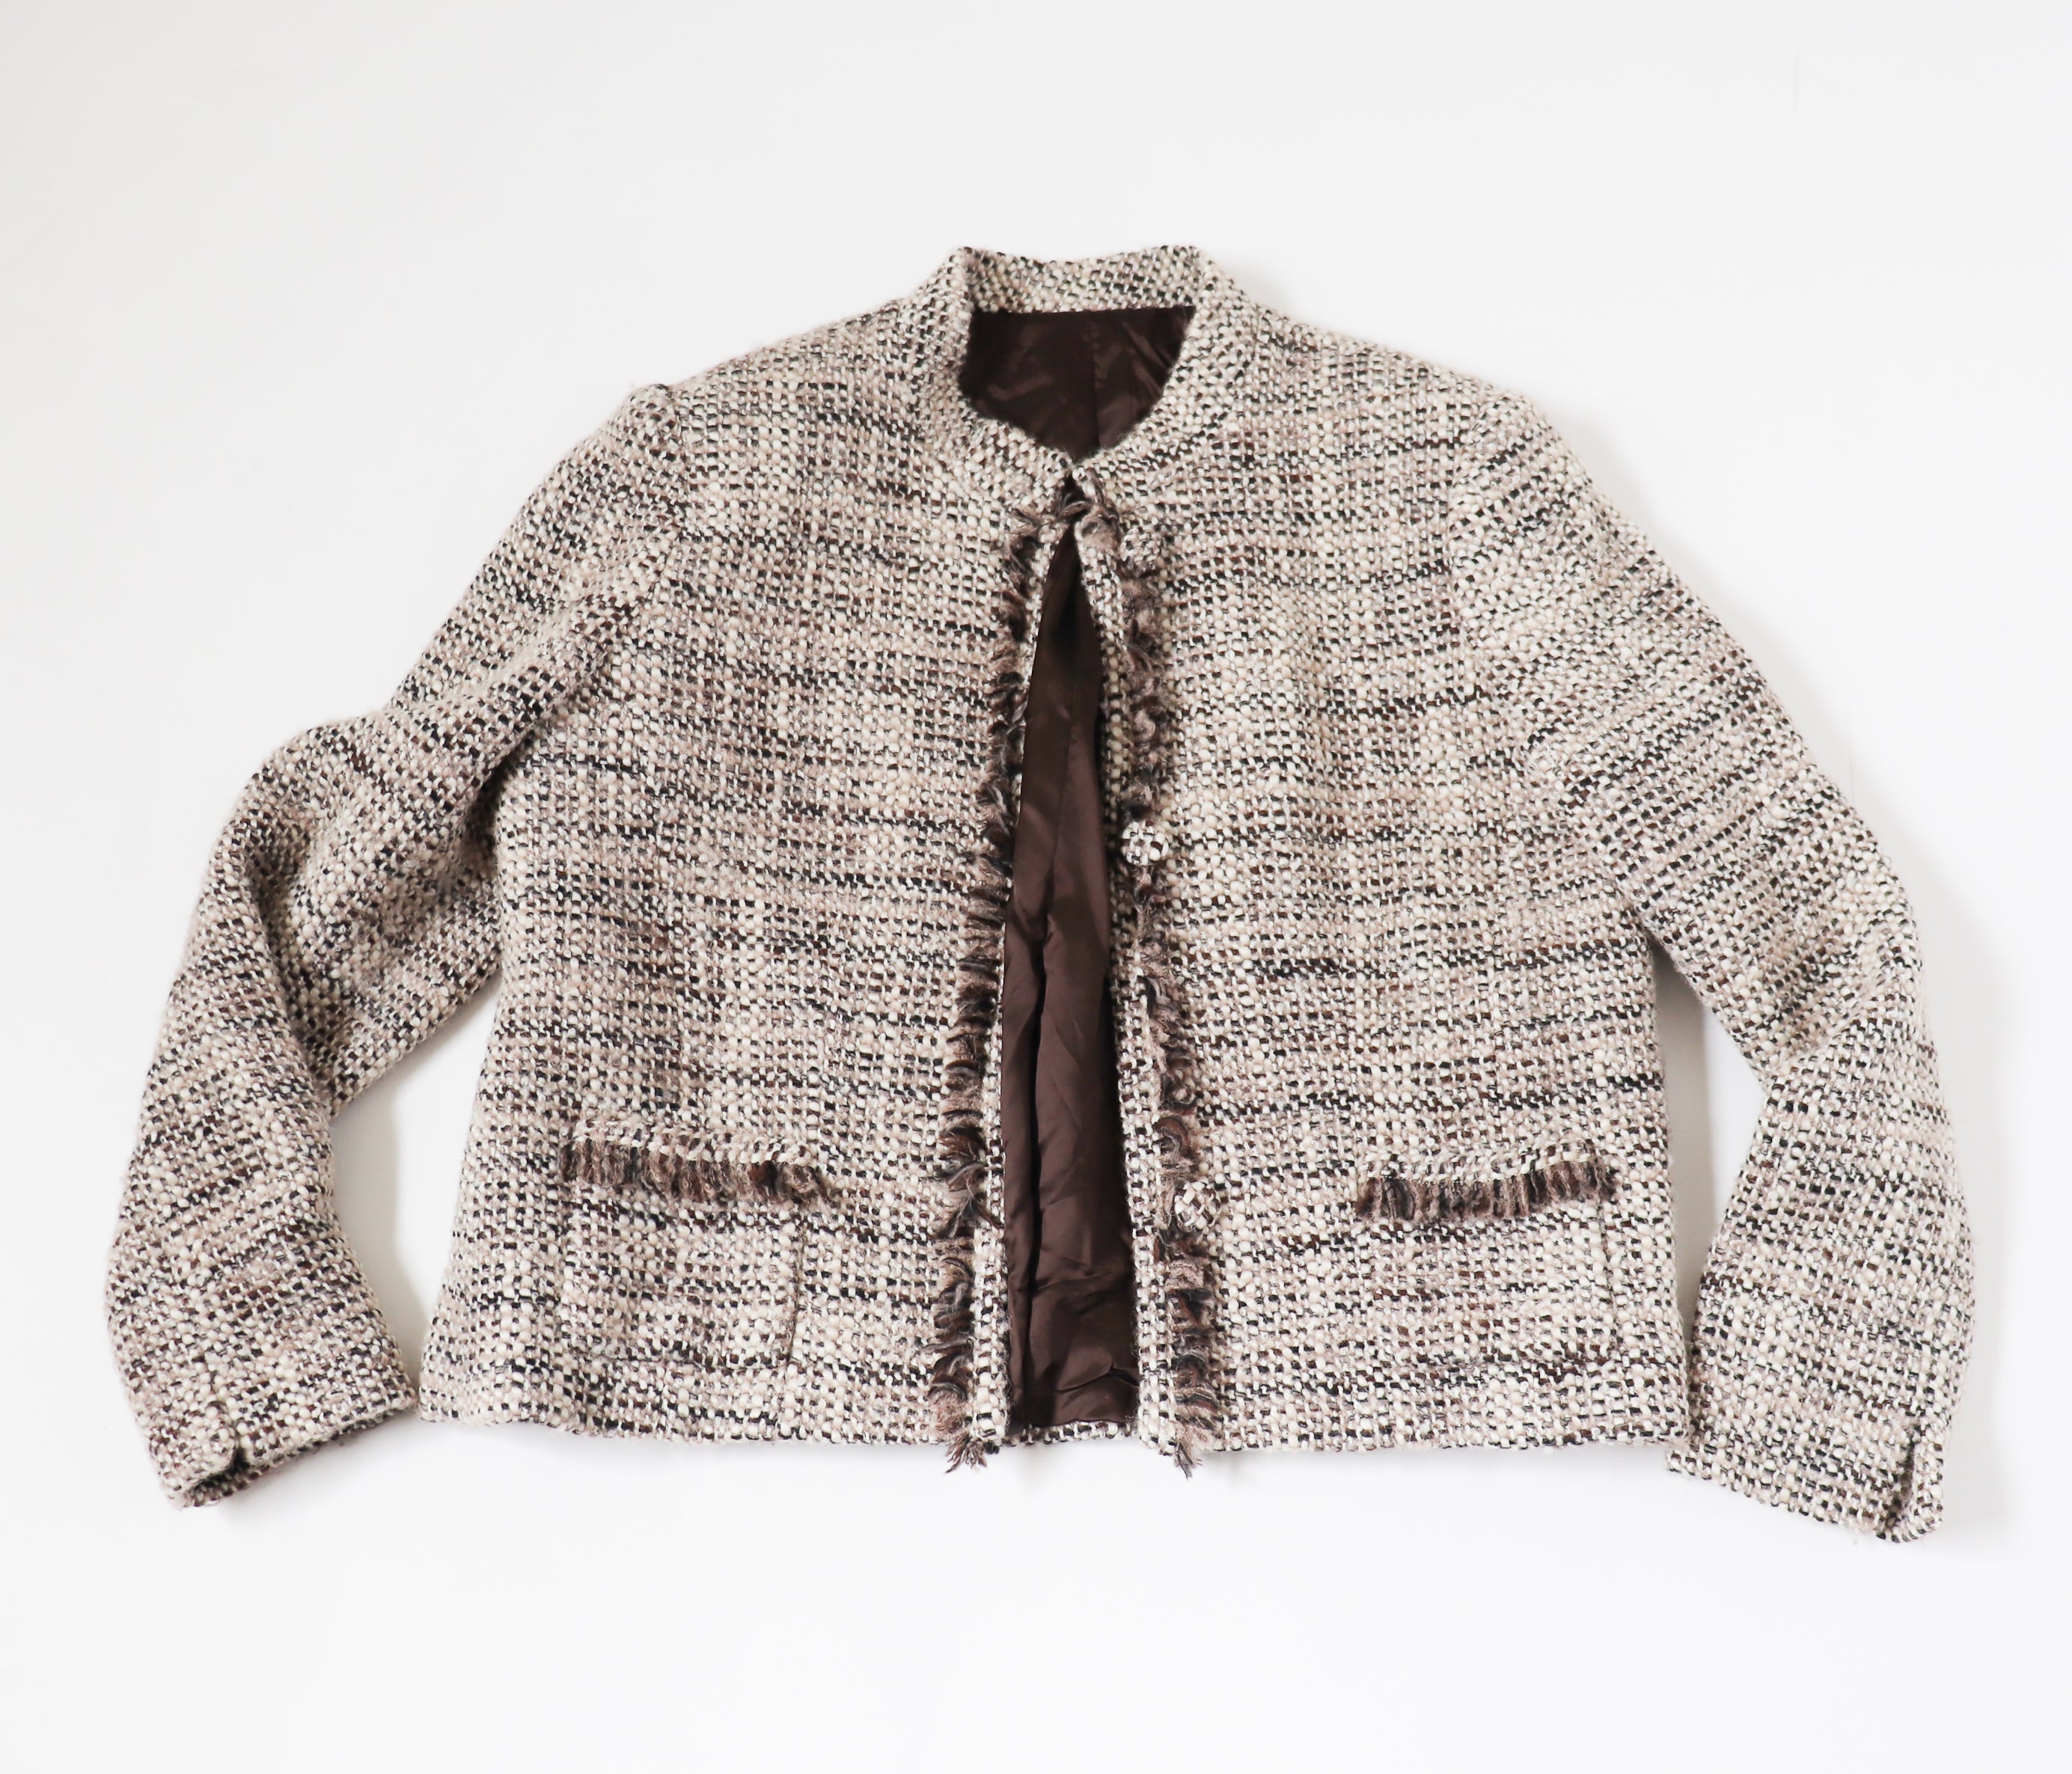 Boucle Tweed Jacket - Wool  Blend - Cream / Brown - M / UK 12